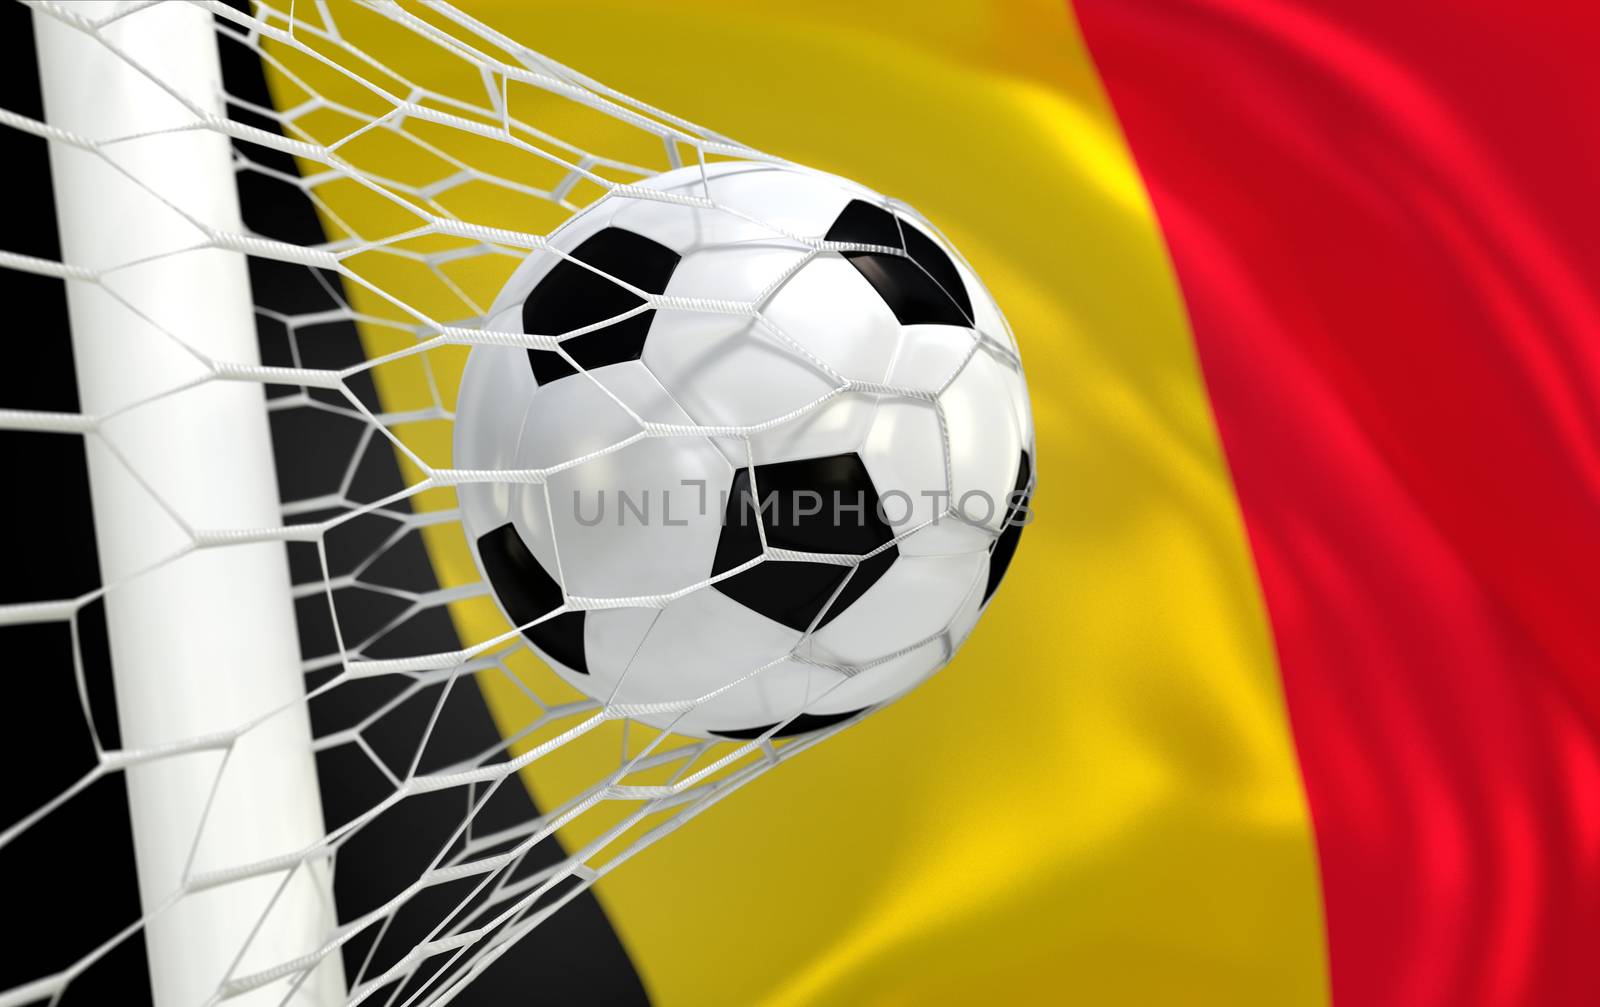 Belgium waving flag and soccer ball in goal net by Barbraford